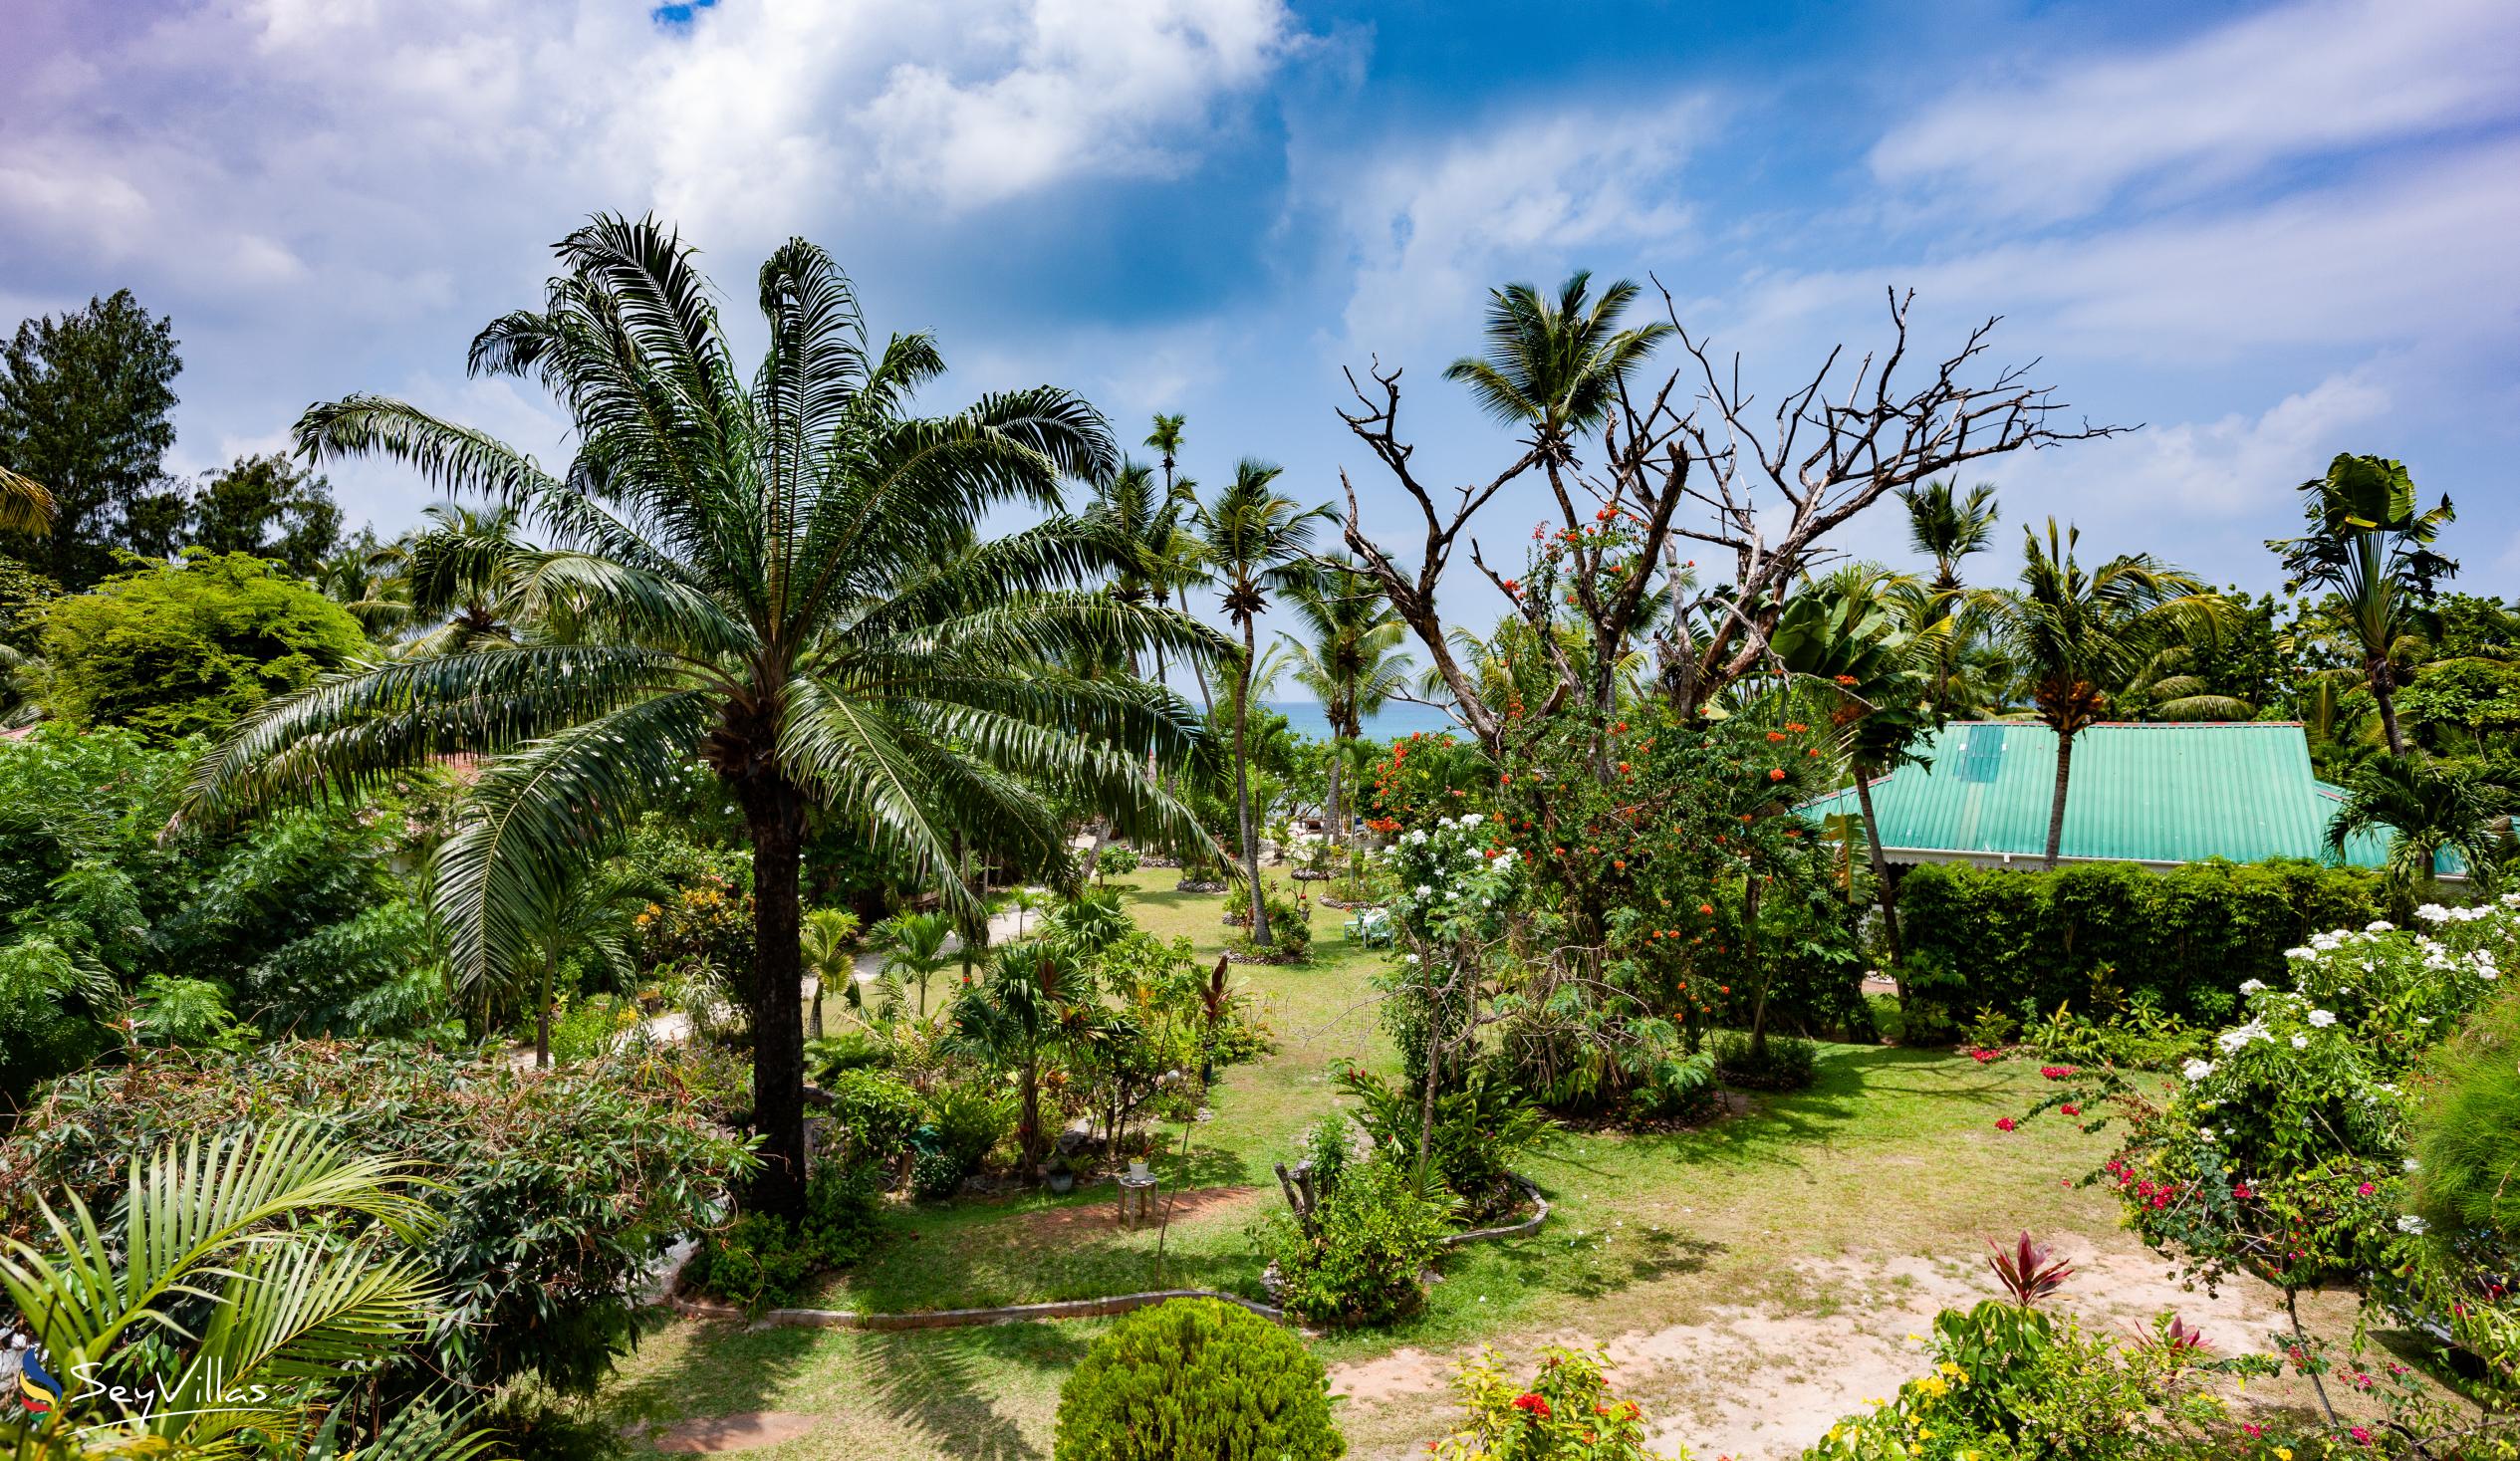 Foto 19: Villas du Voyageur - Aussenbereich - Praslin (Seychellen)